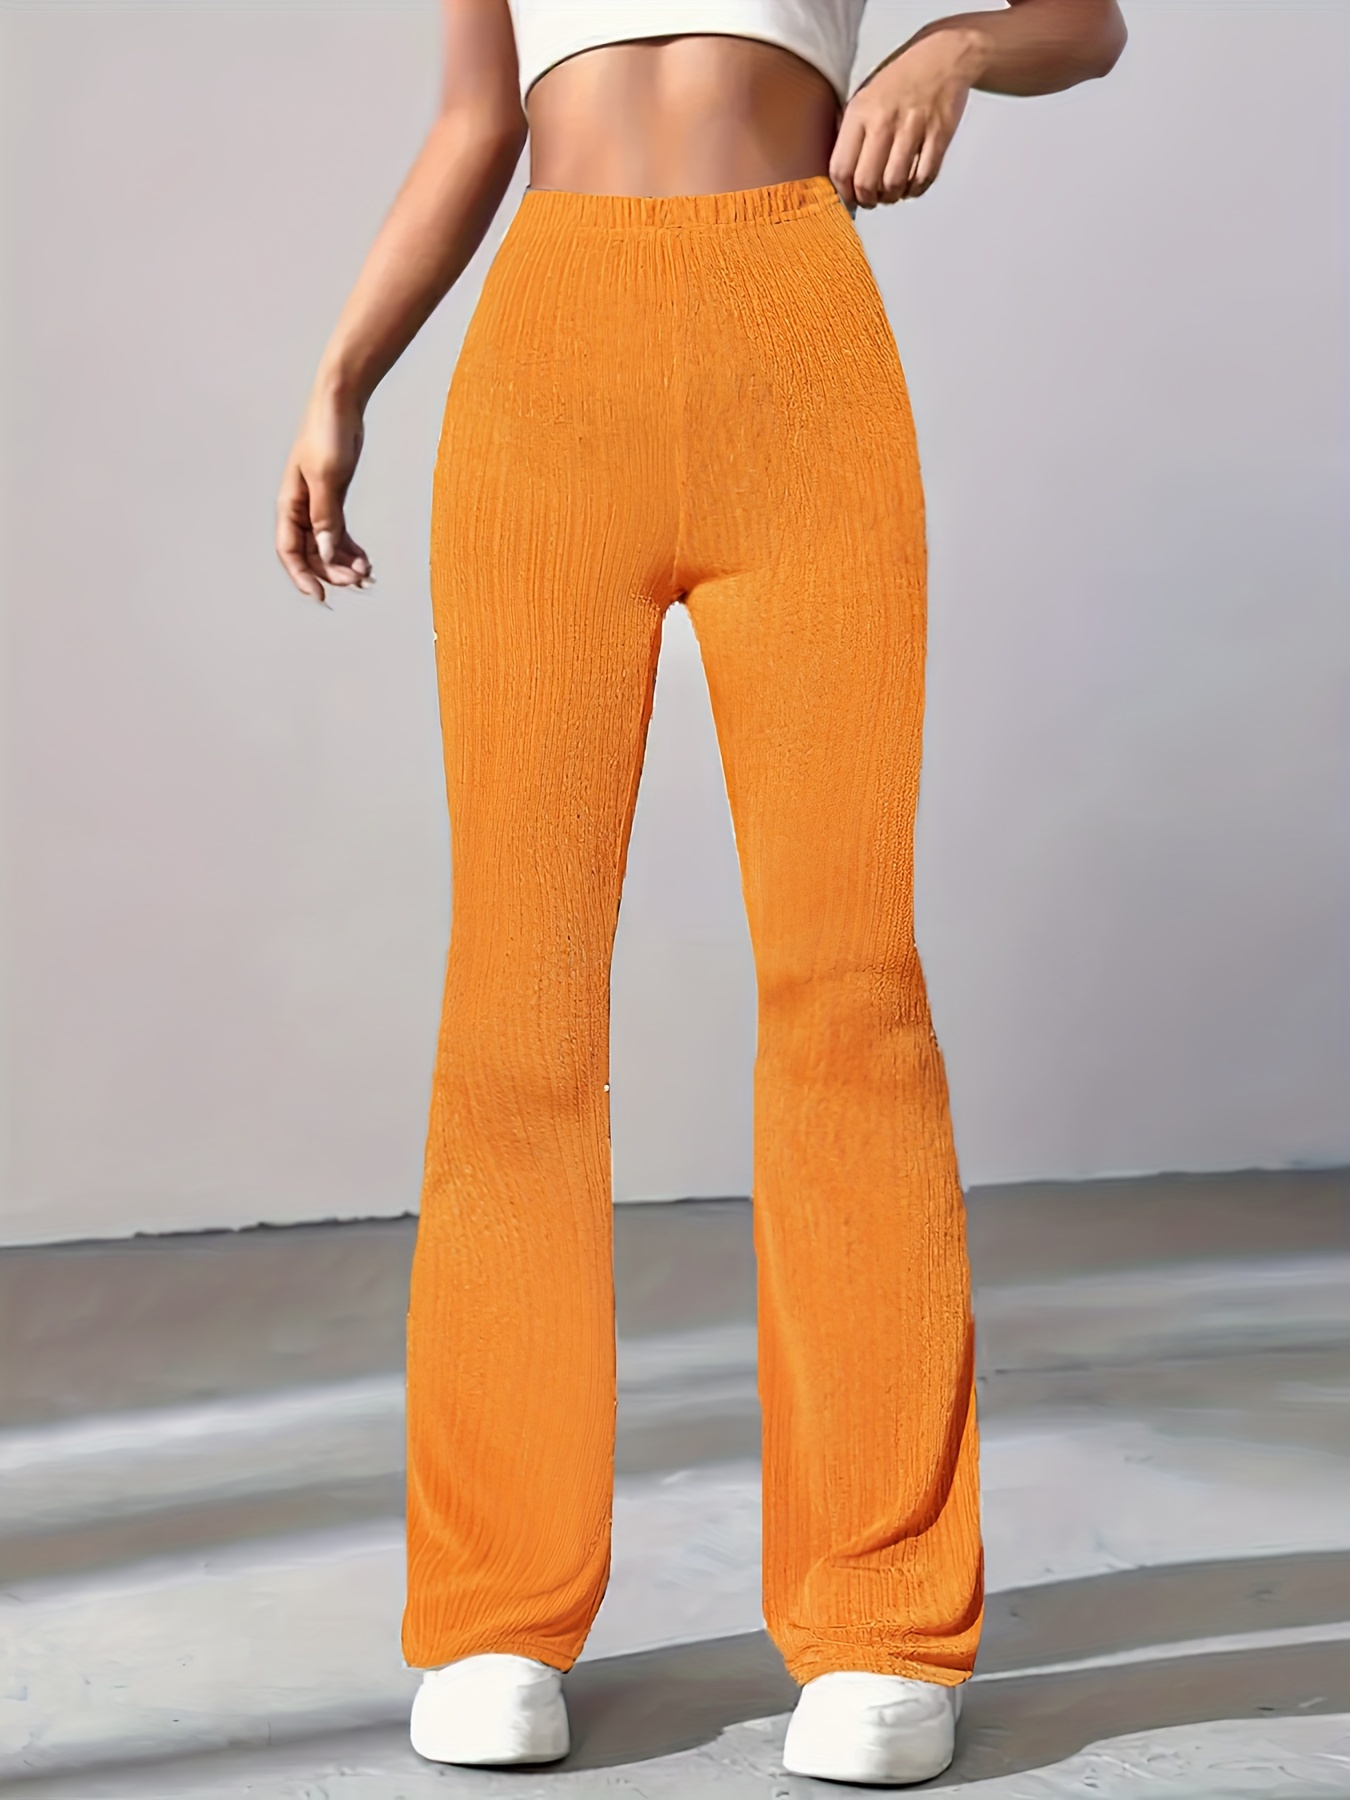 Pantalones Molecule 451019, naranjas